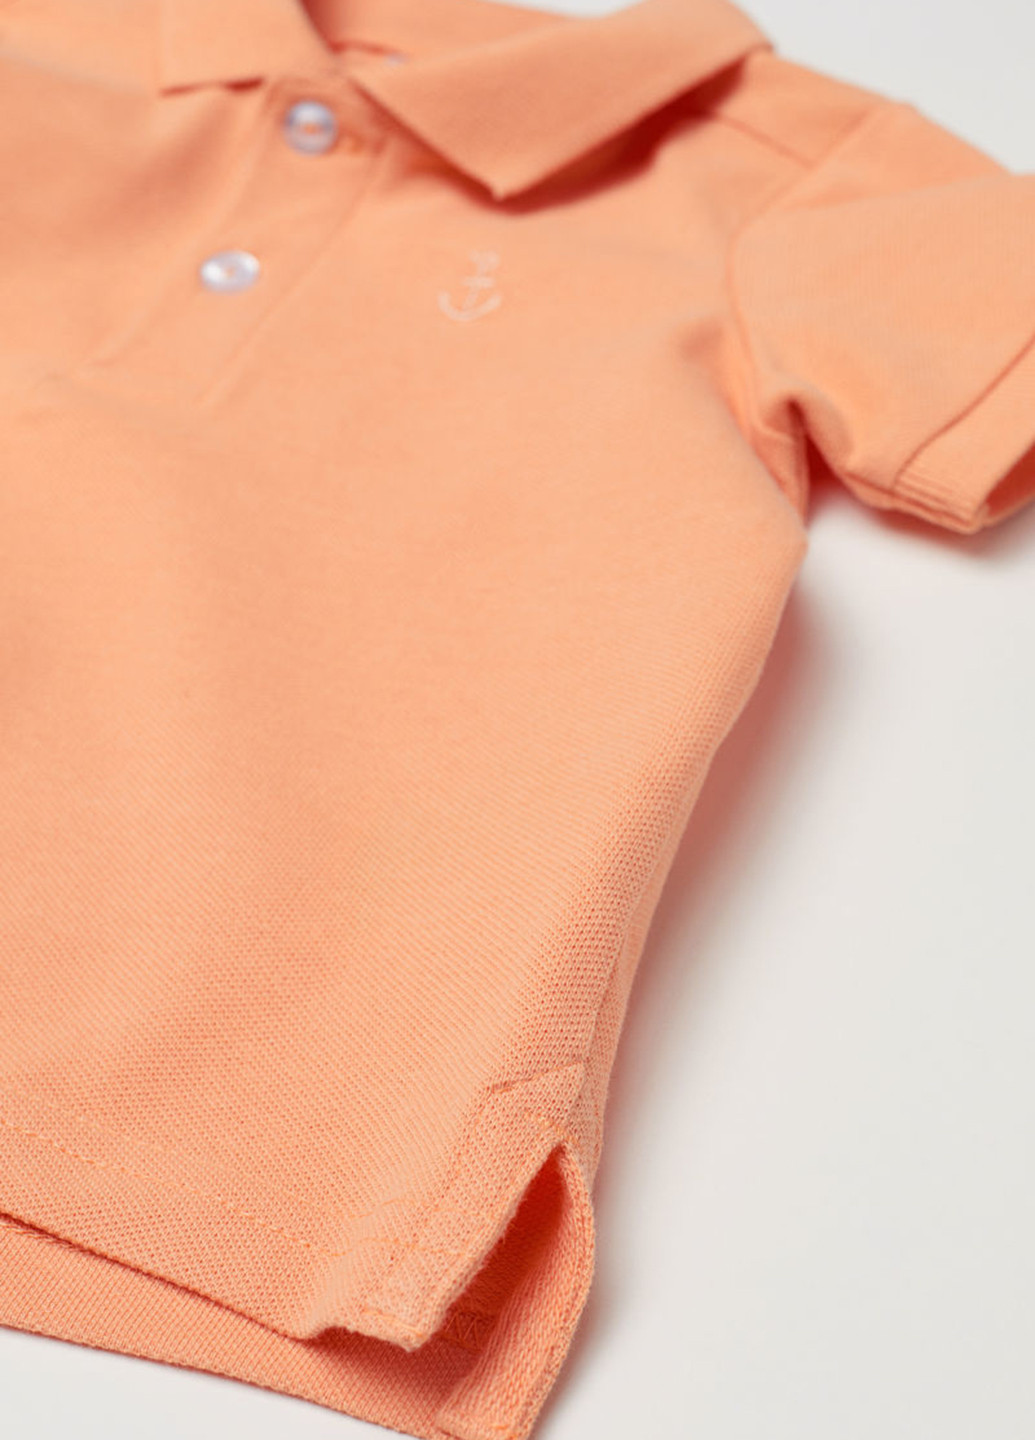 Оранжевая детская футболка-поло для мальчика H&M однотонная